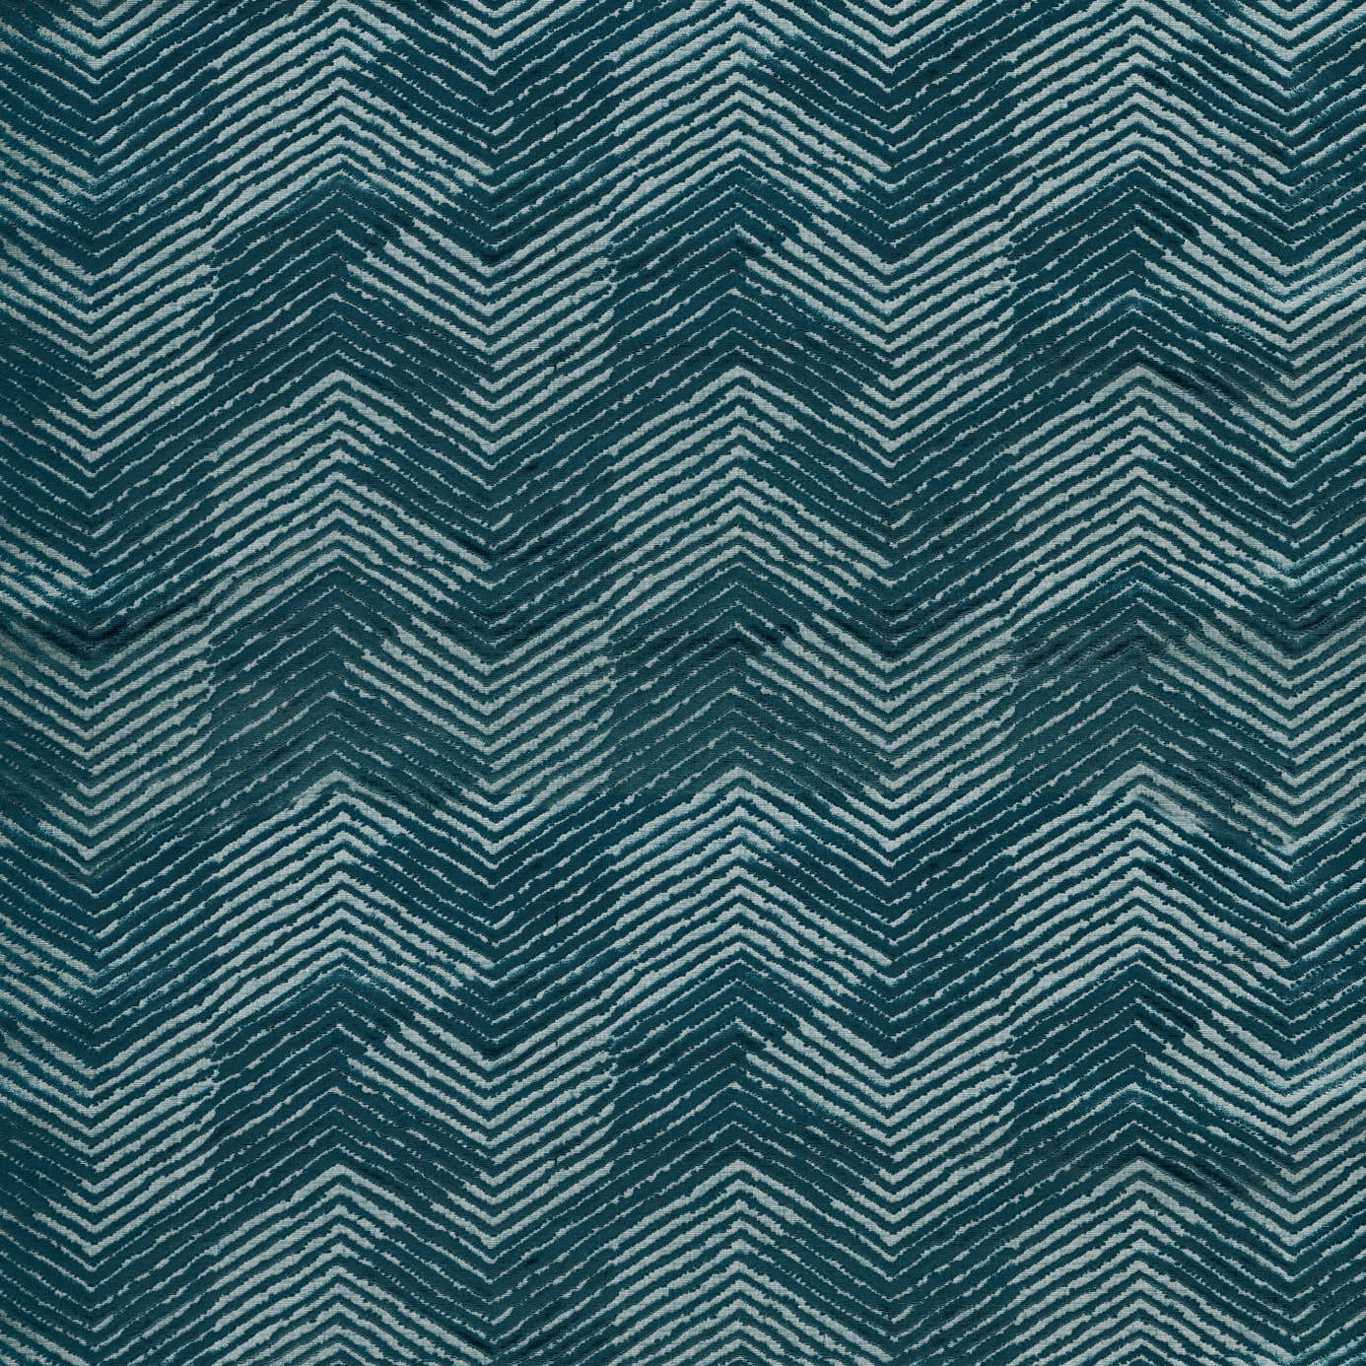 Grade Adriatic Fabric by HAR